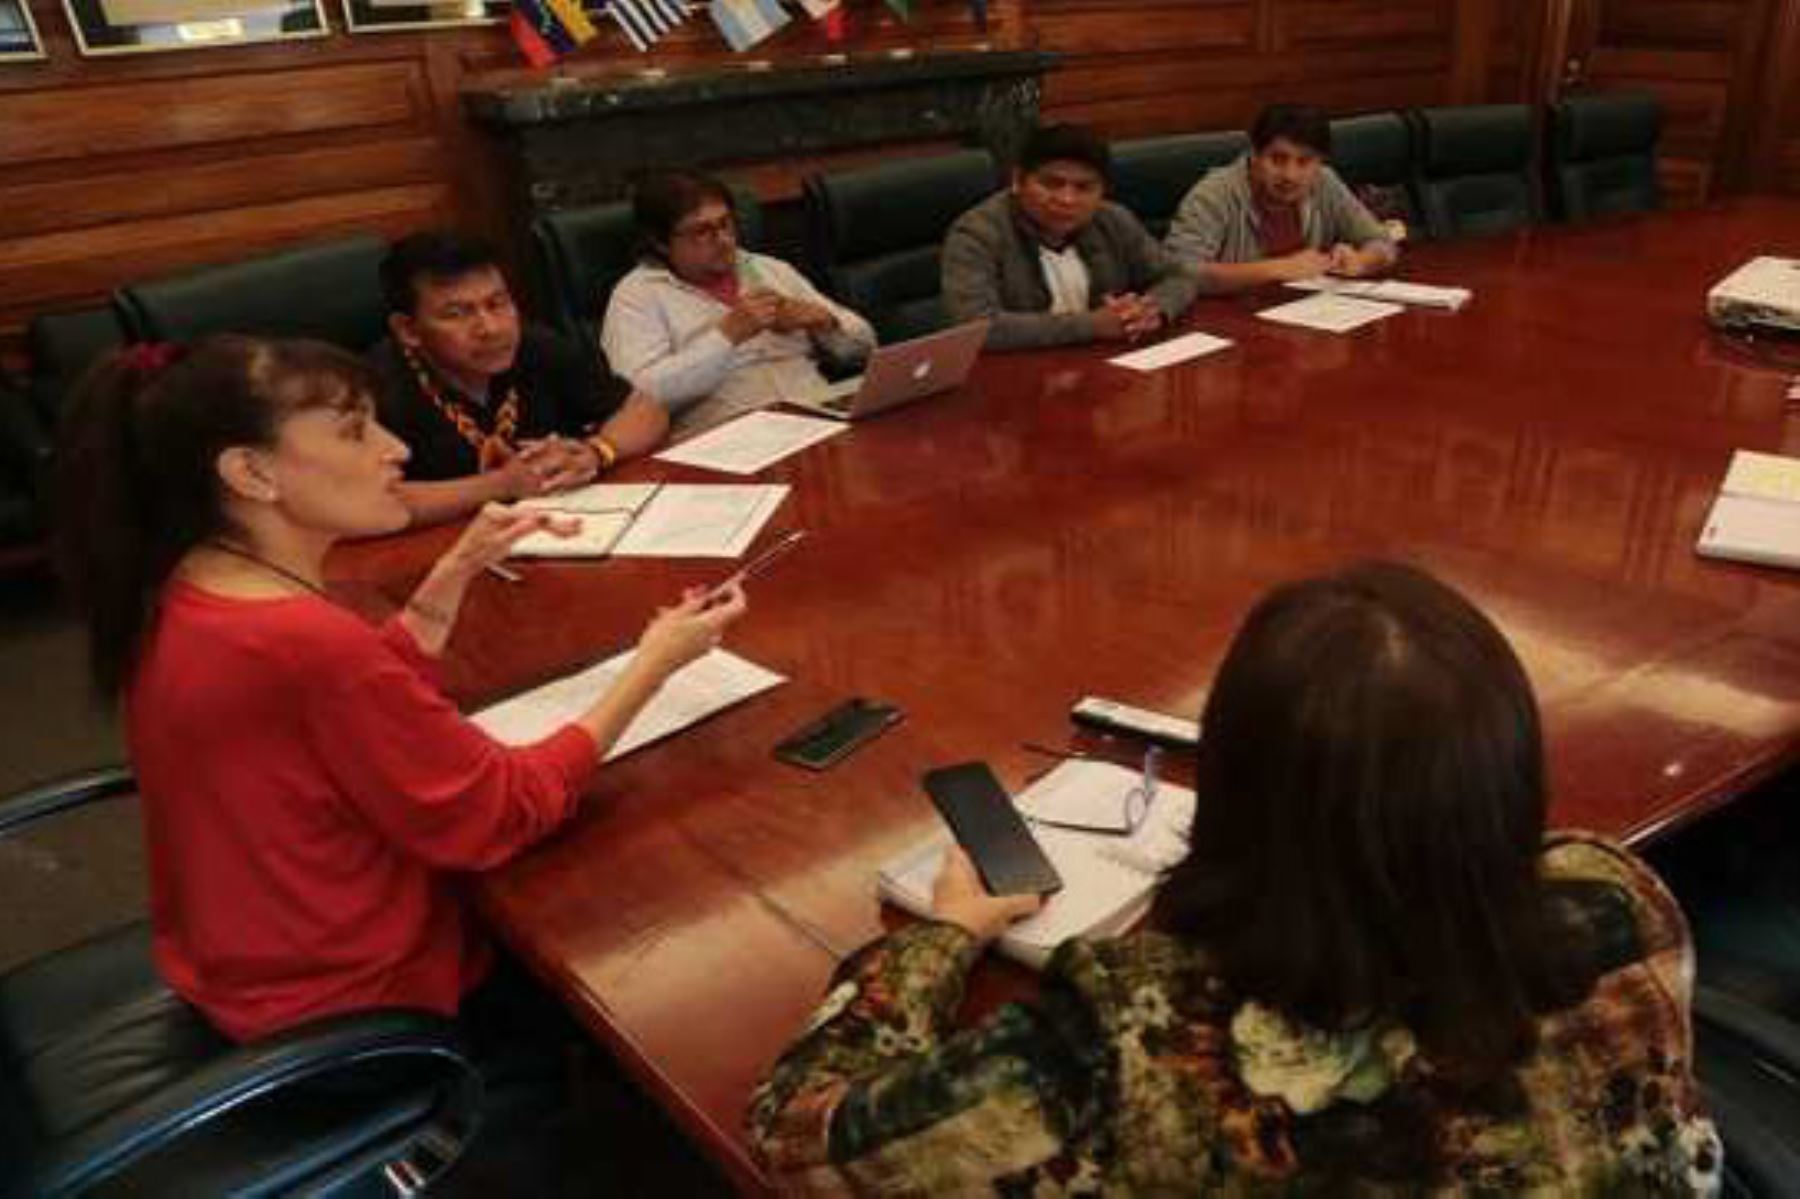 La Ministra de Salud, Silvia Pessah, se reunió con los “apus” o representantes de dichas comunidades indígenas en la sede del Ministerio de Salud.